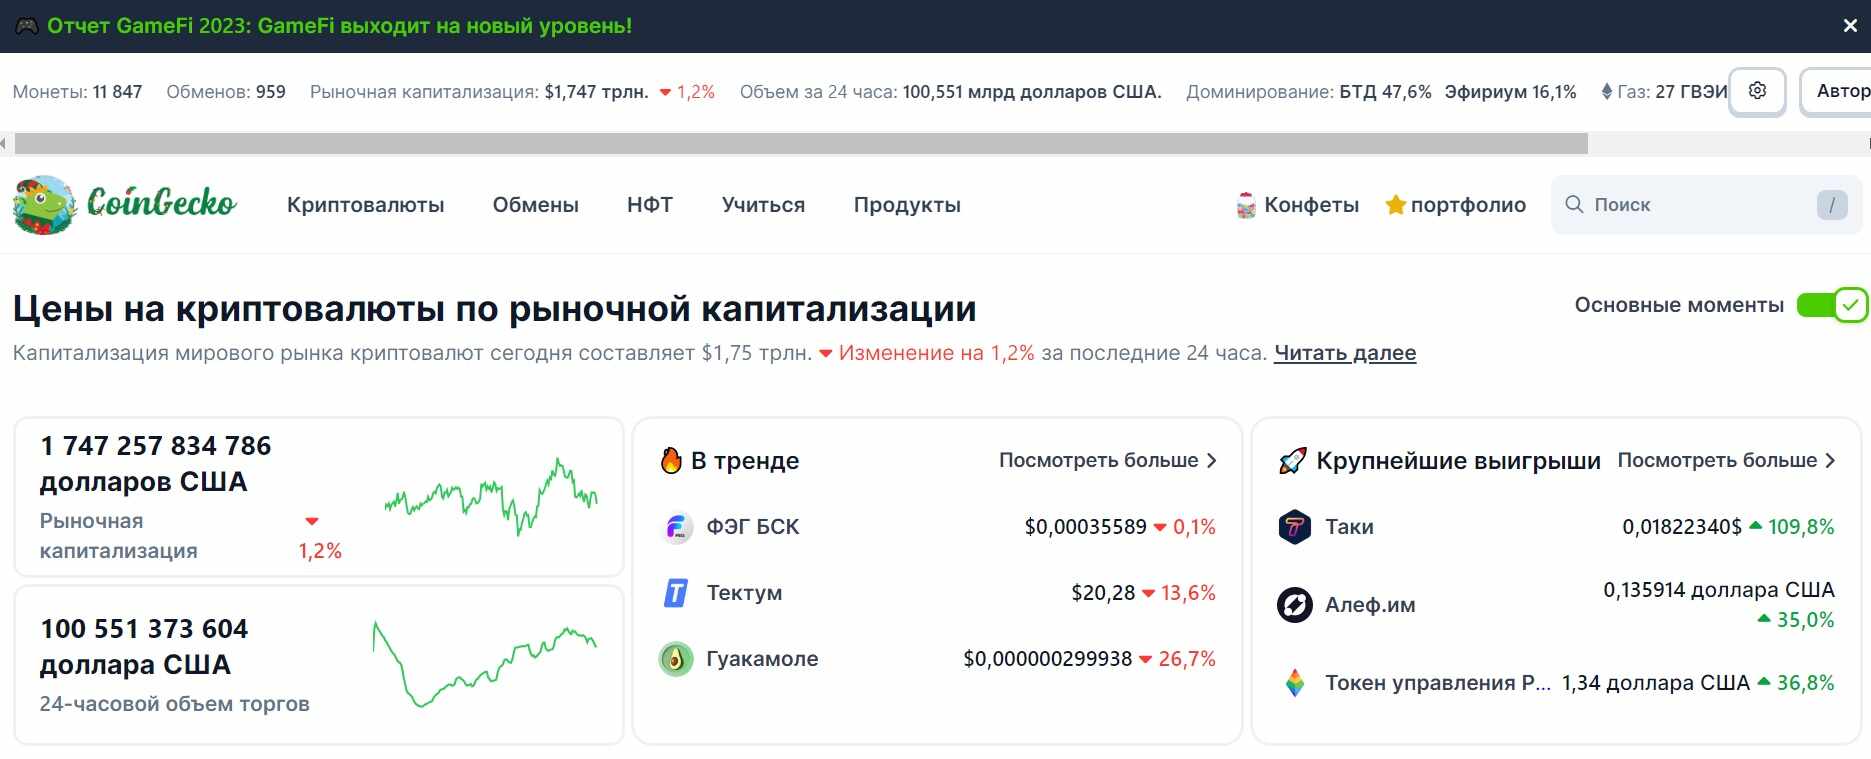 Топ-10 информационных финансовых ресурсов для инвесторов и трейдеров (есть сайты на русском)